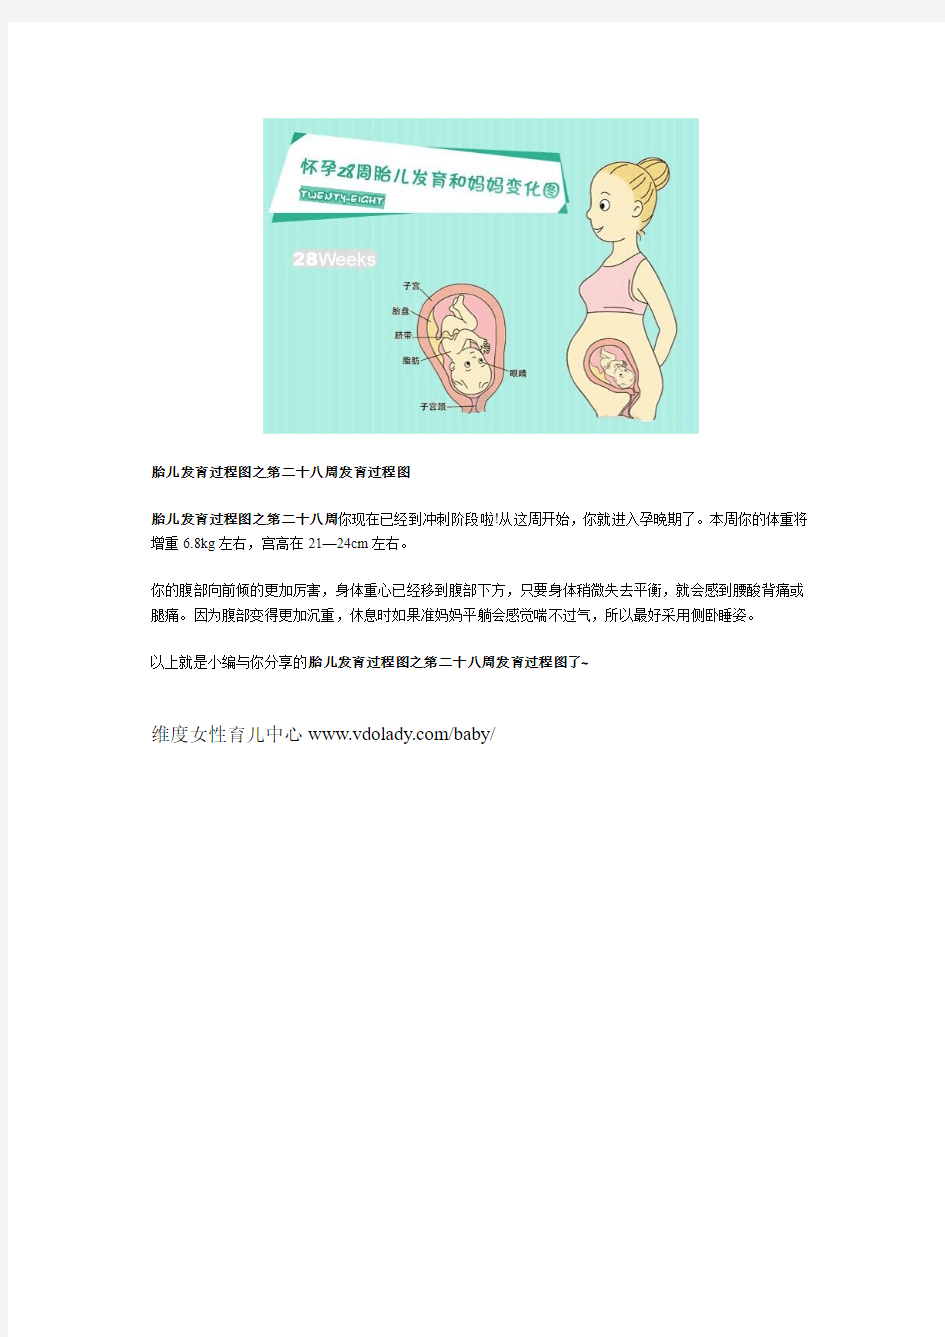 胎儿发育过程图之第二十八周发育过程图